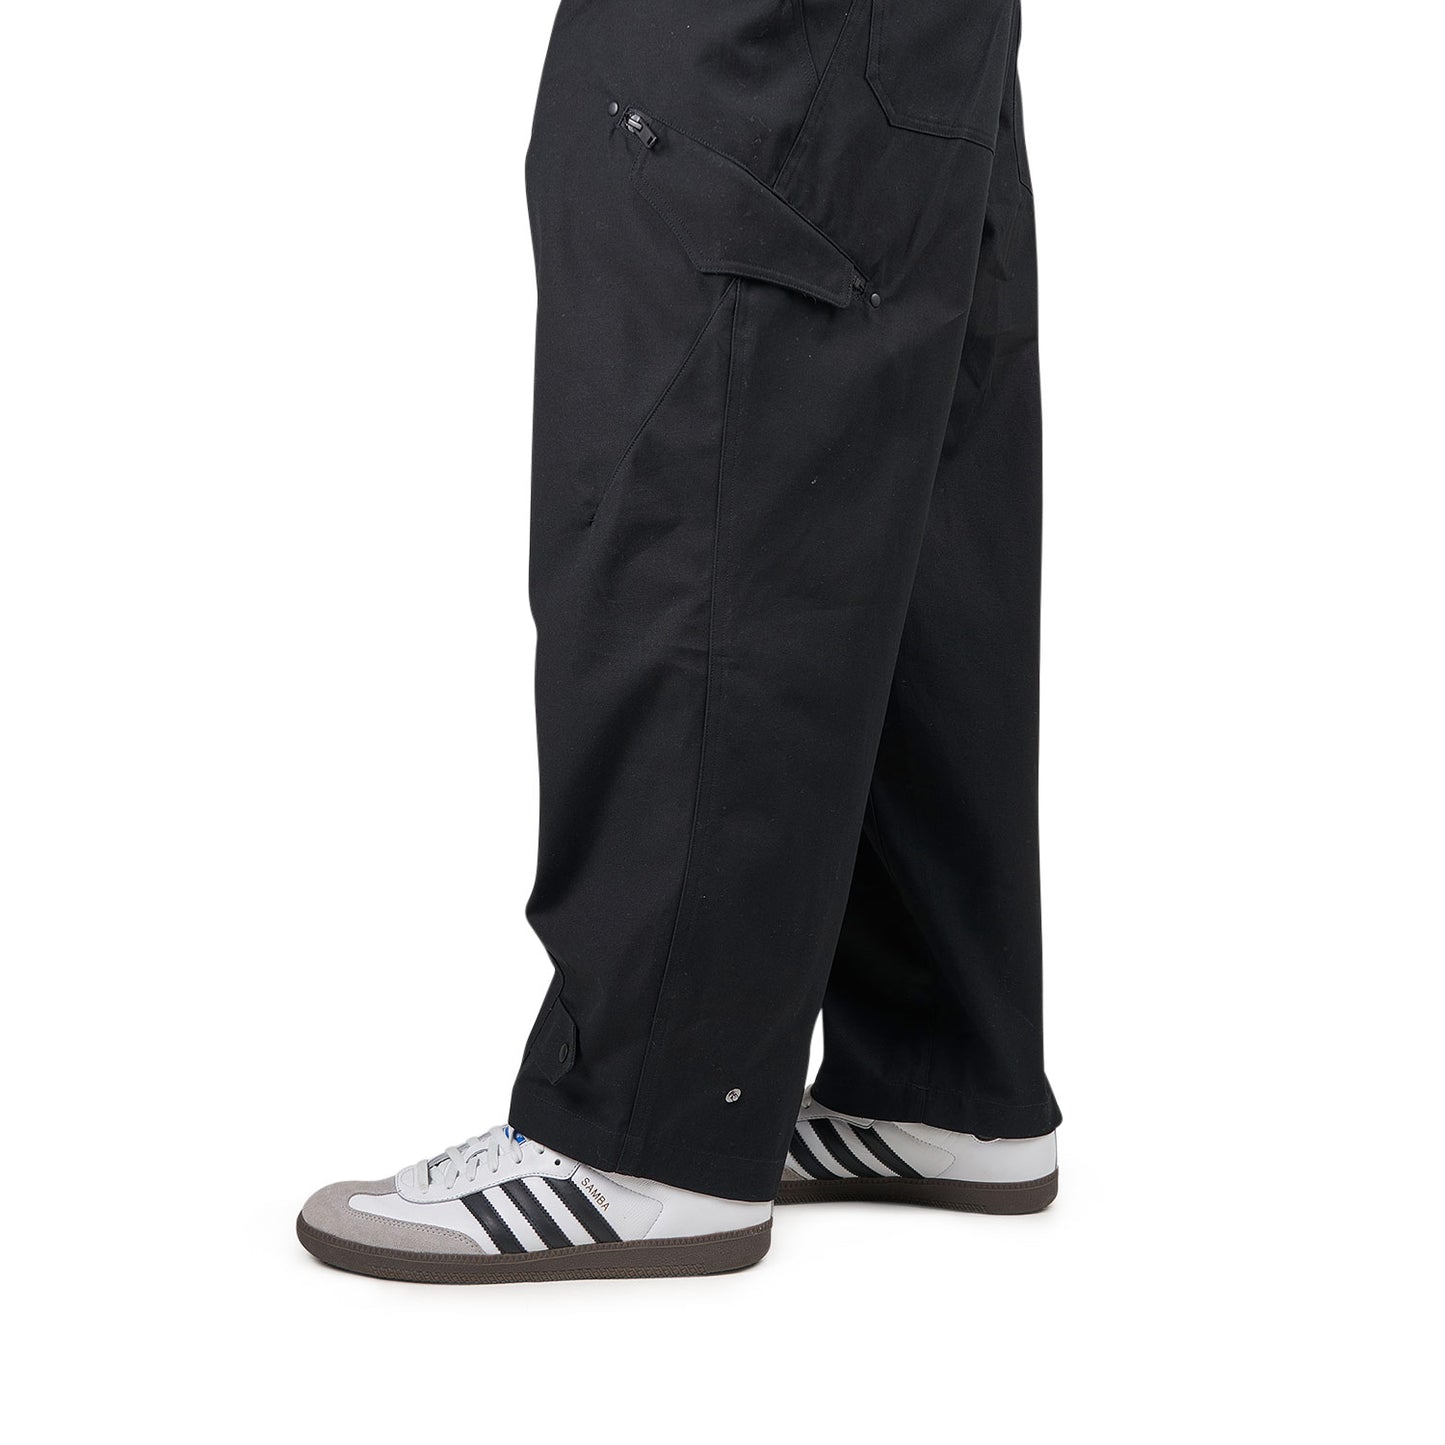 Y-3 Workwear Pants (Schwarz)  - Allike Store